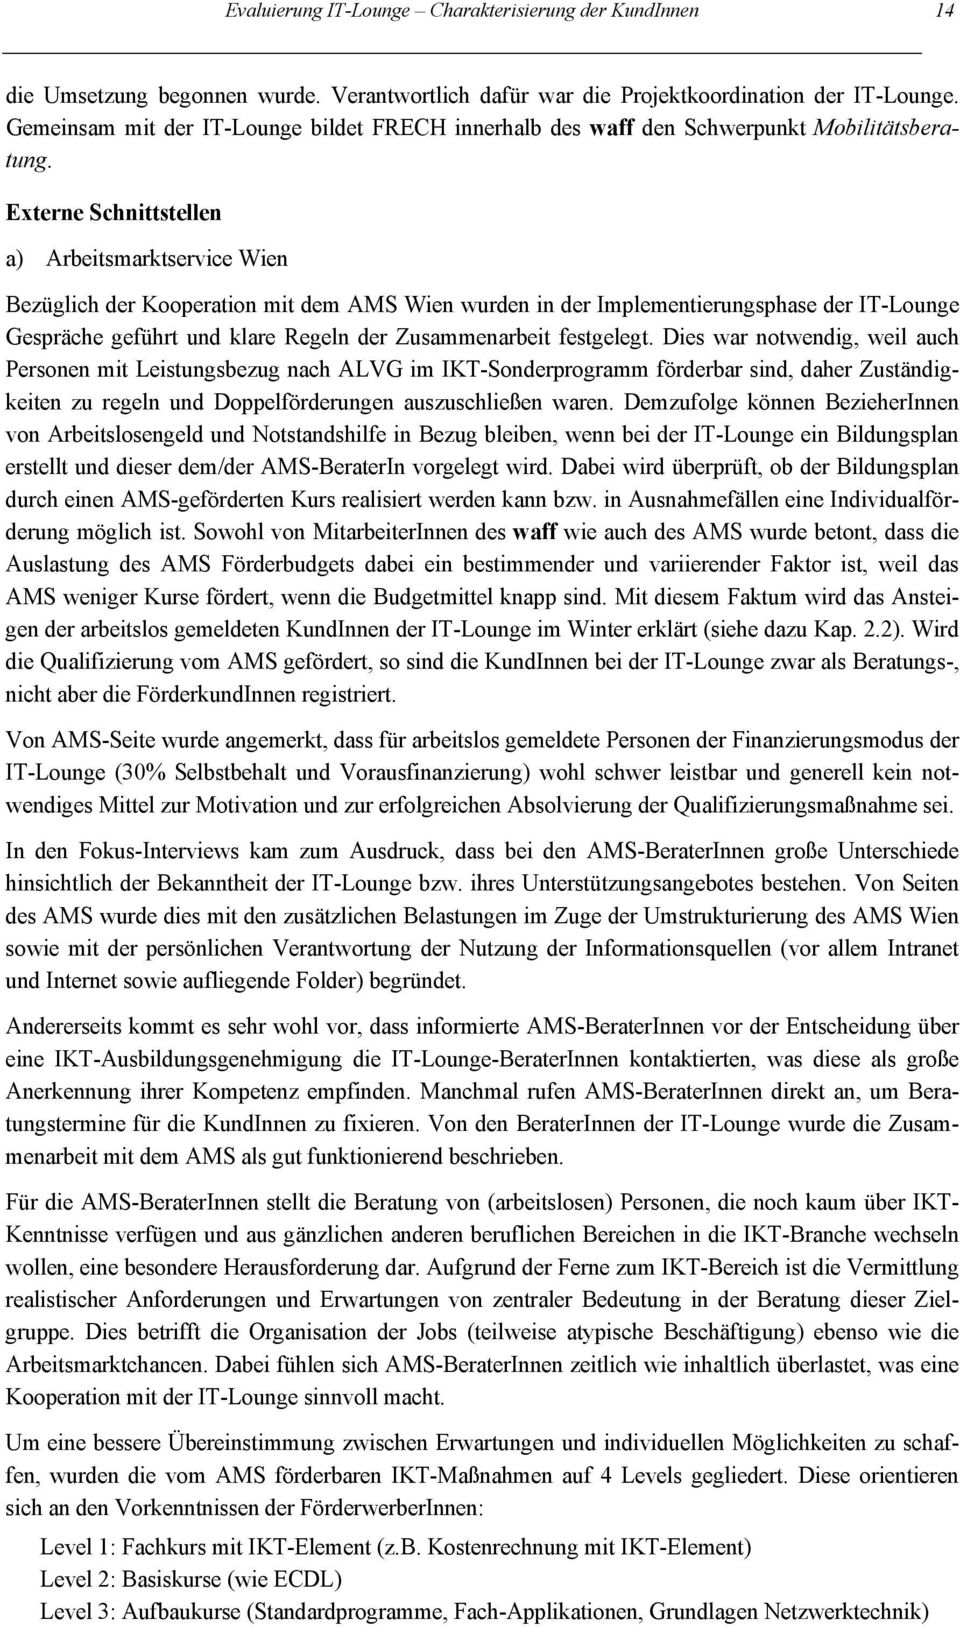 Externe Schnittstellen a) Arbeitsmarktservice Wien Bezüglich der Kooperation mit dem AMS Wien wurden in der Implementierungsphase der IT-Lounge Gespräche geführt und klare Regeln der Zusammenarbeit